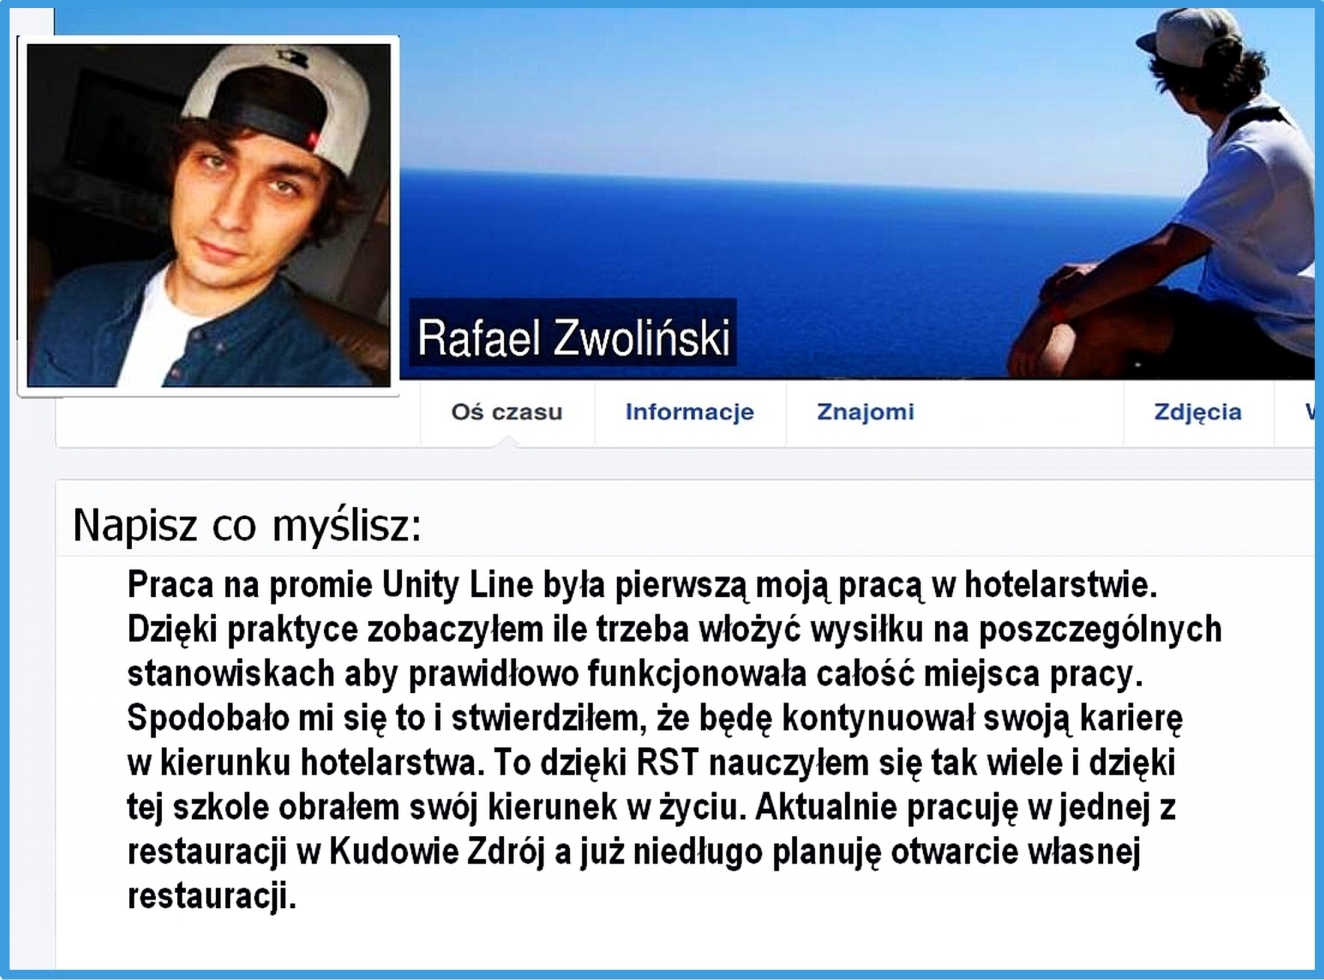 Friend 2016 Unity Line 30facebook Rafael Zwoliński